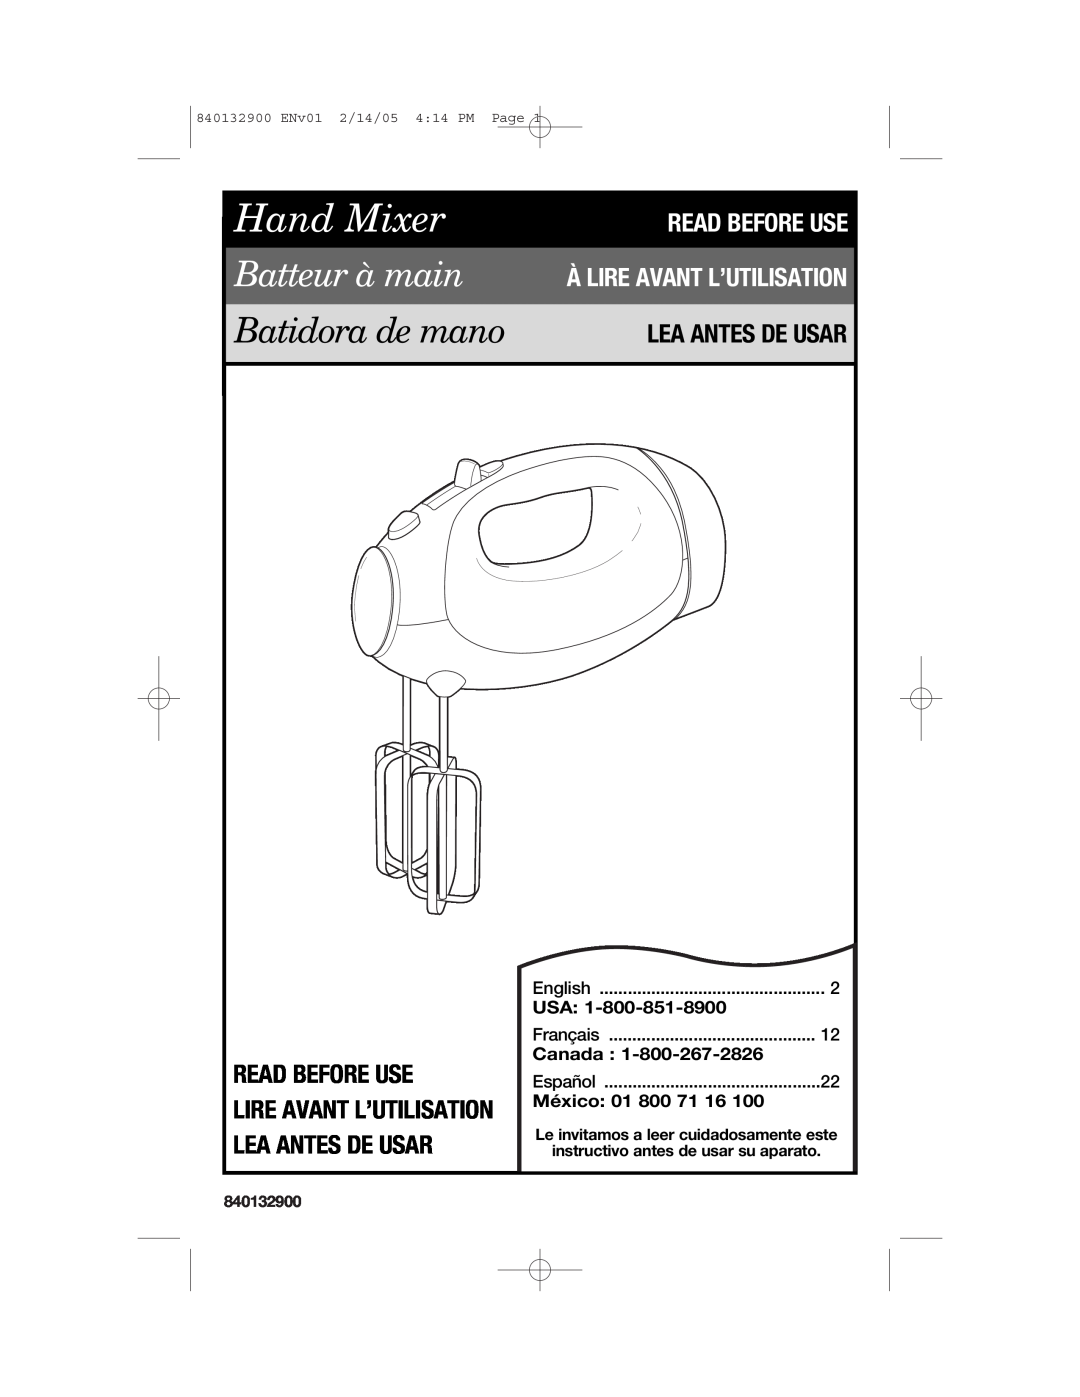 Hamilton Beach 840132900 manual Read Before Use, Lire Avant L’Utilisation Lea Antes De Usar, Hand Mixer, Batteur à main 